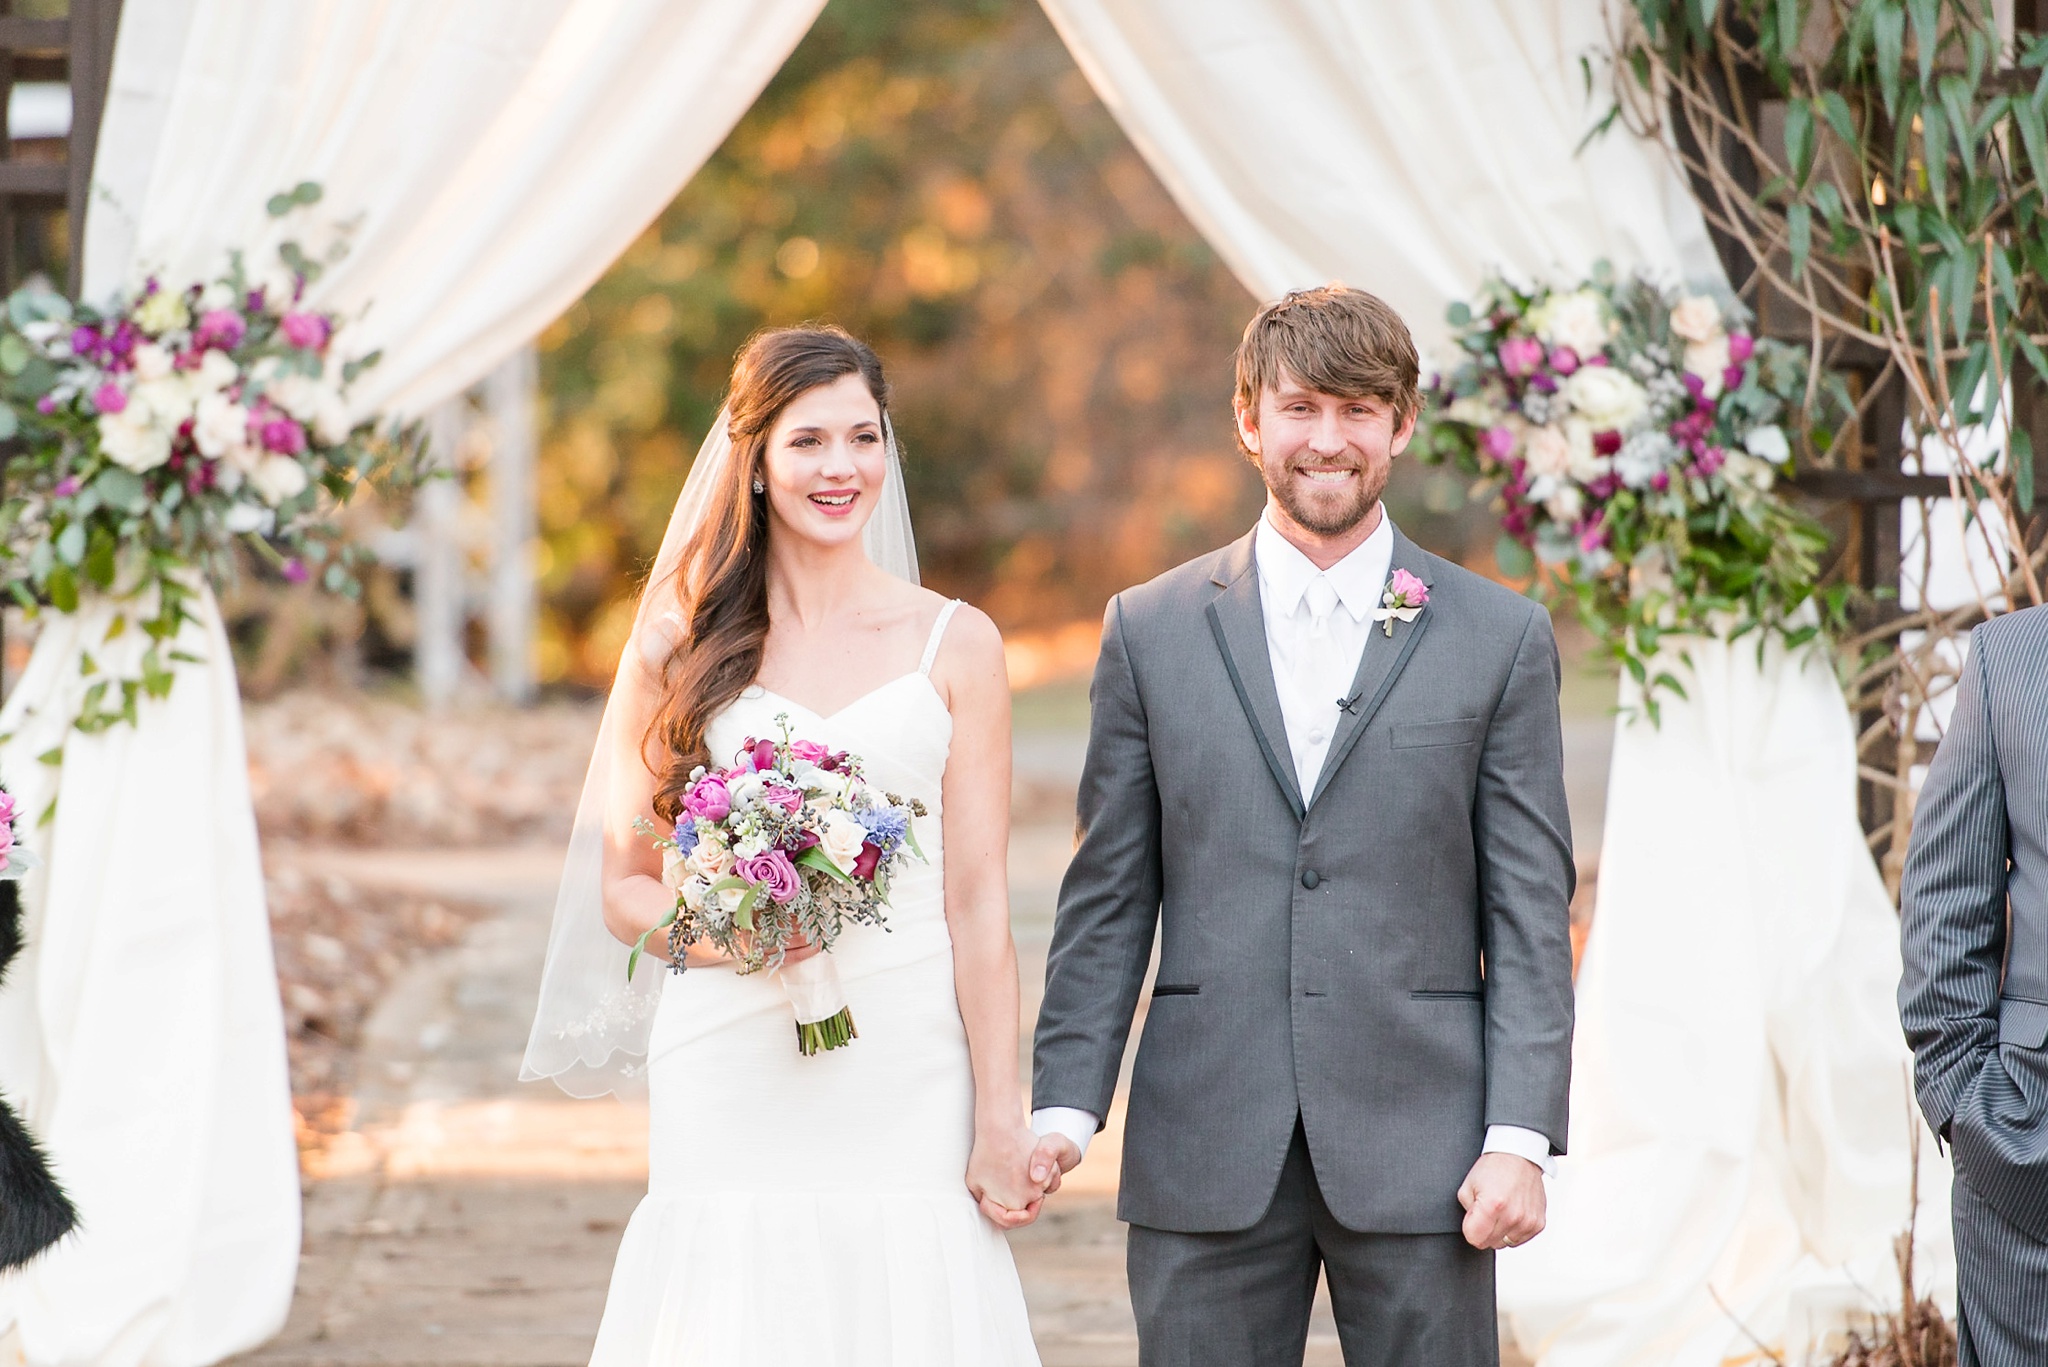 Snowy Winter Aldridge Gardens Wedding | Birmingham Alabama Wedding Photographers_0034.jpg